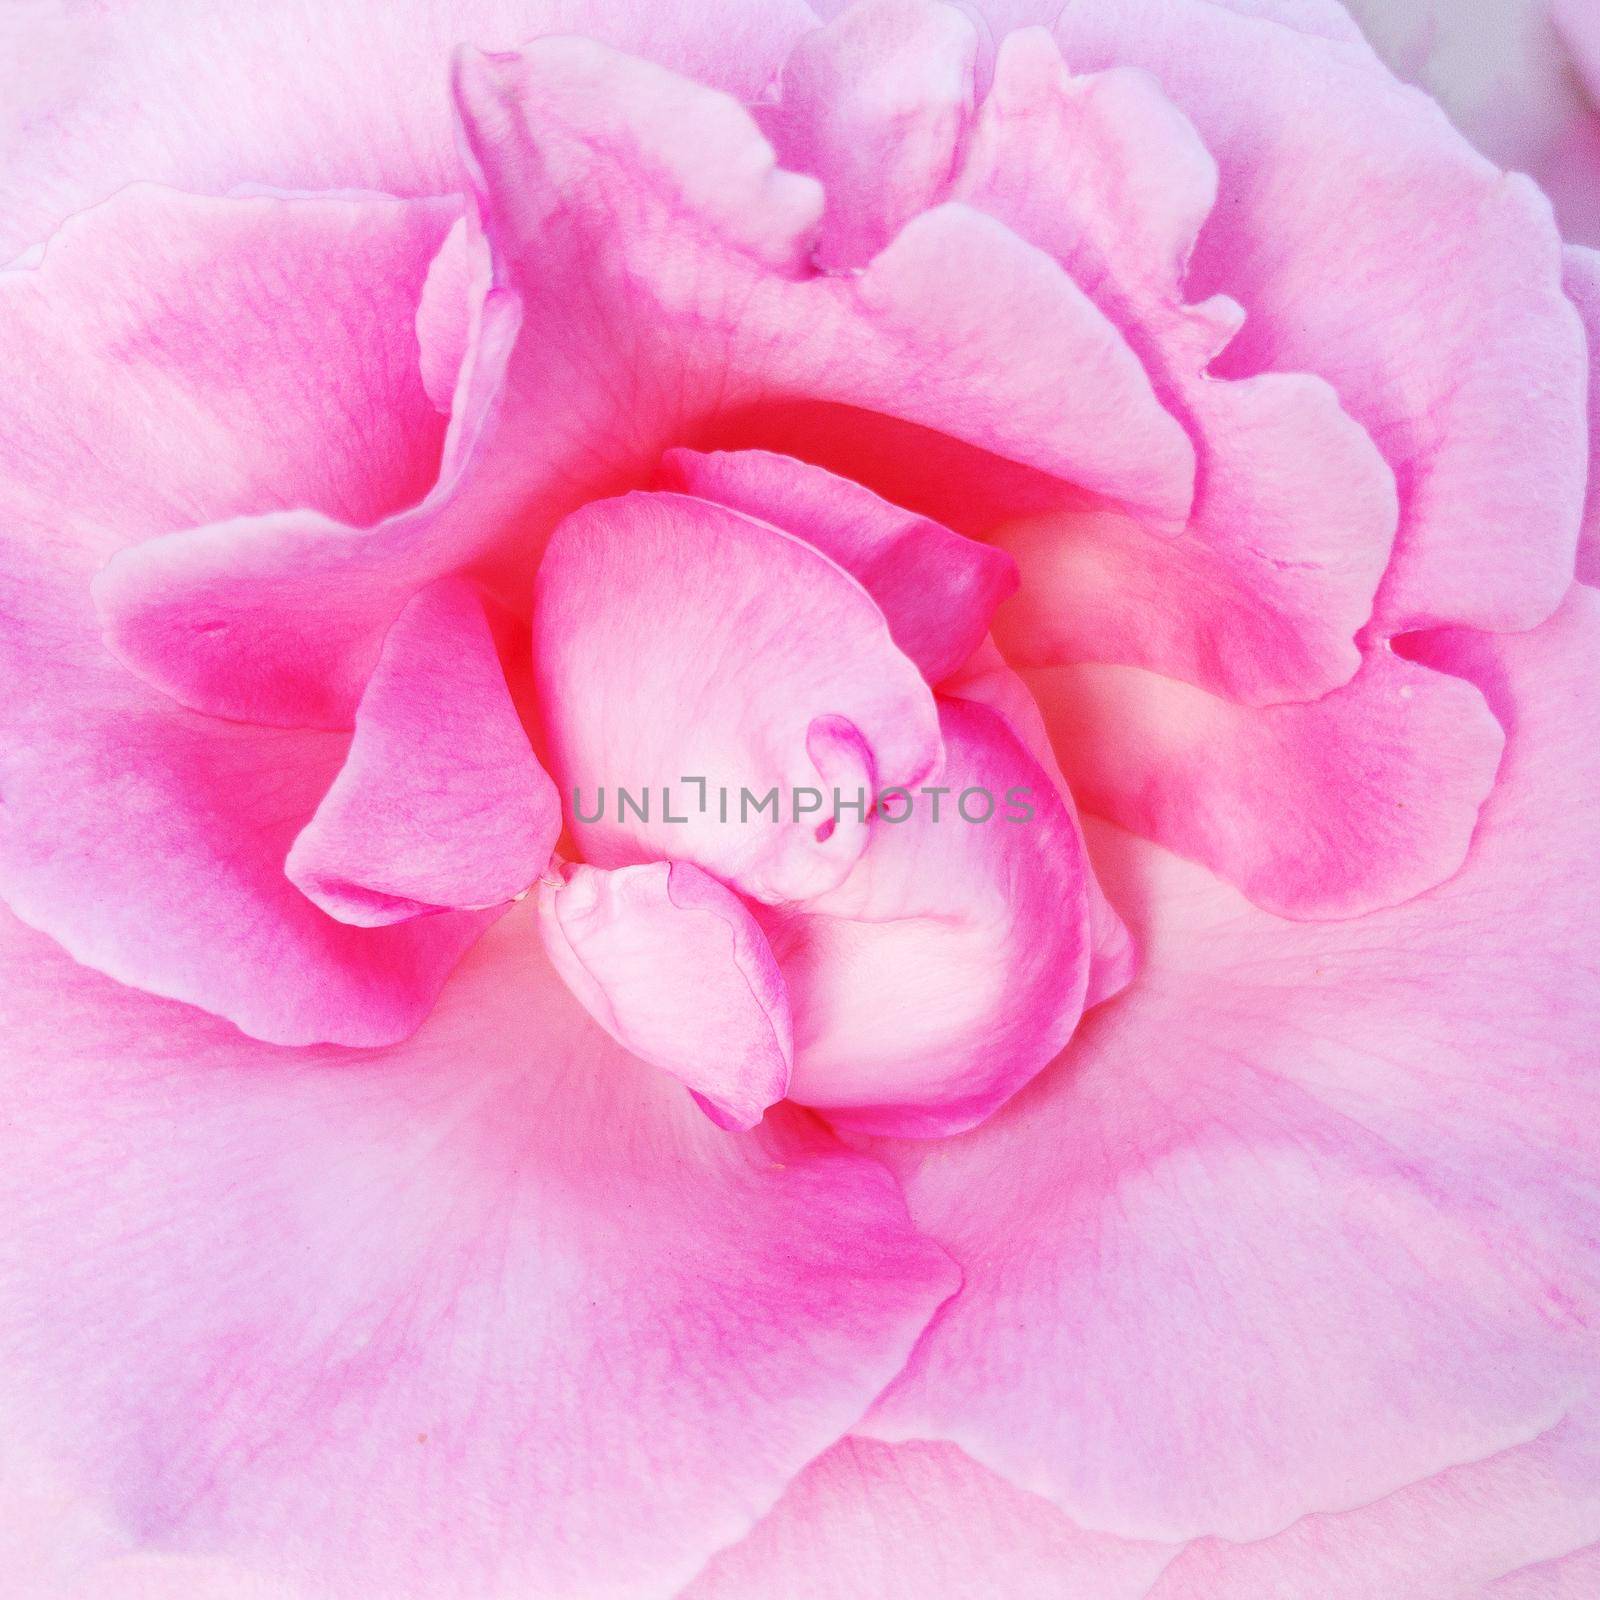 Petals of a delicate pink rose close-up by AlexGrec